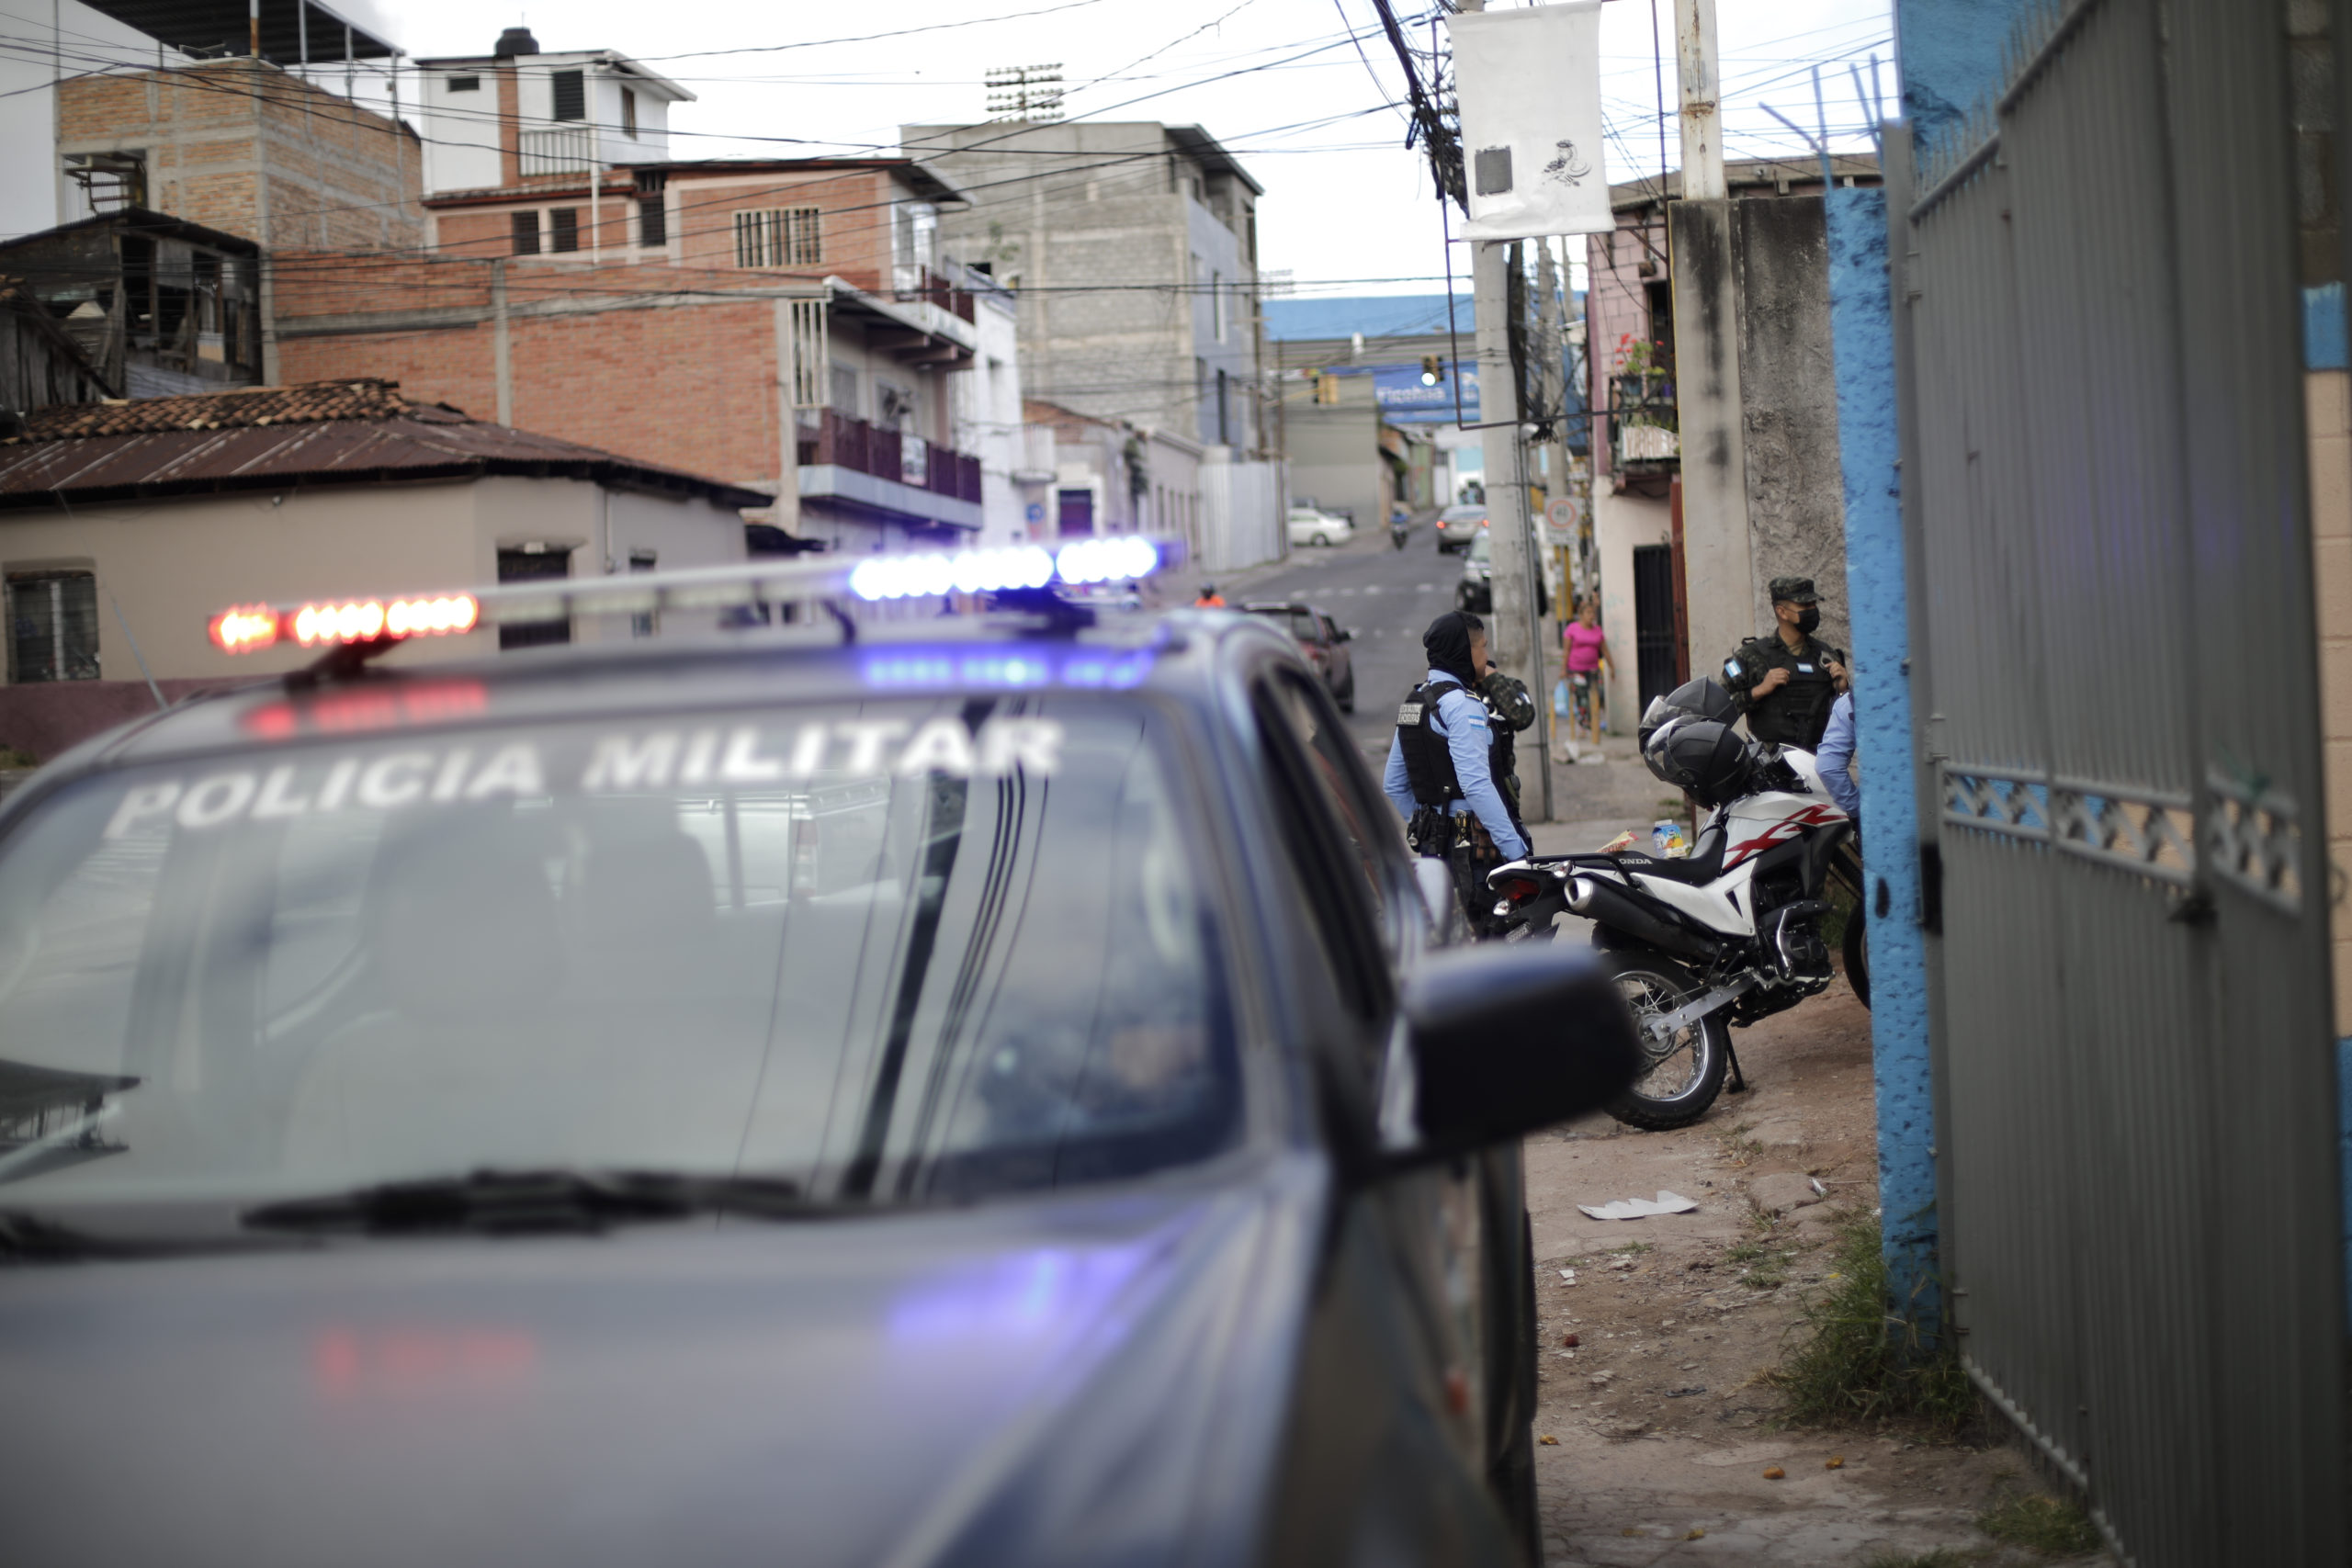 Miembros de la Policía Militar y Policía Nacional resguardan la escena del crimen donde fue encontrado el cuerpo de una persona encostalada. Foto CC/Jorge Cabrera